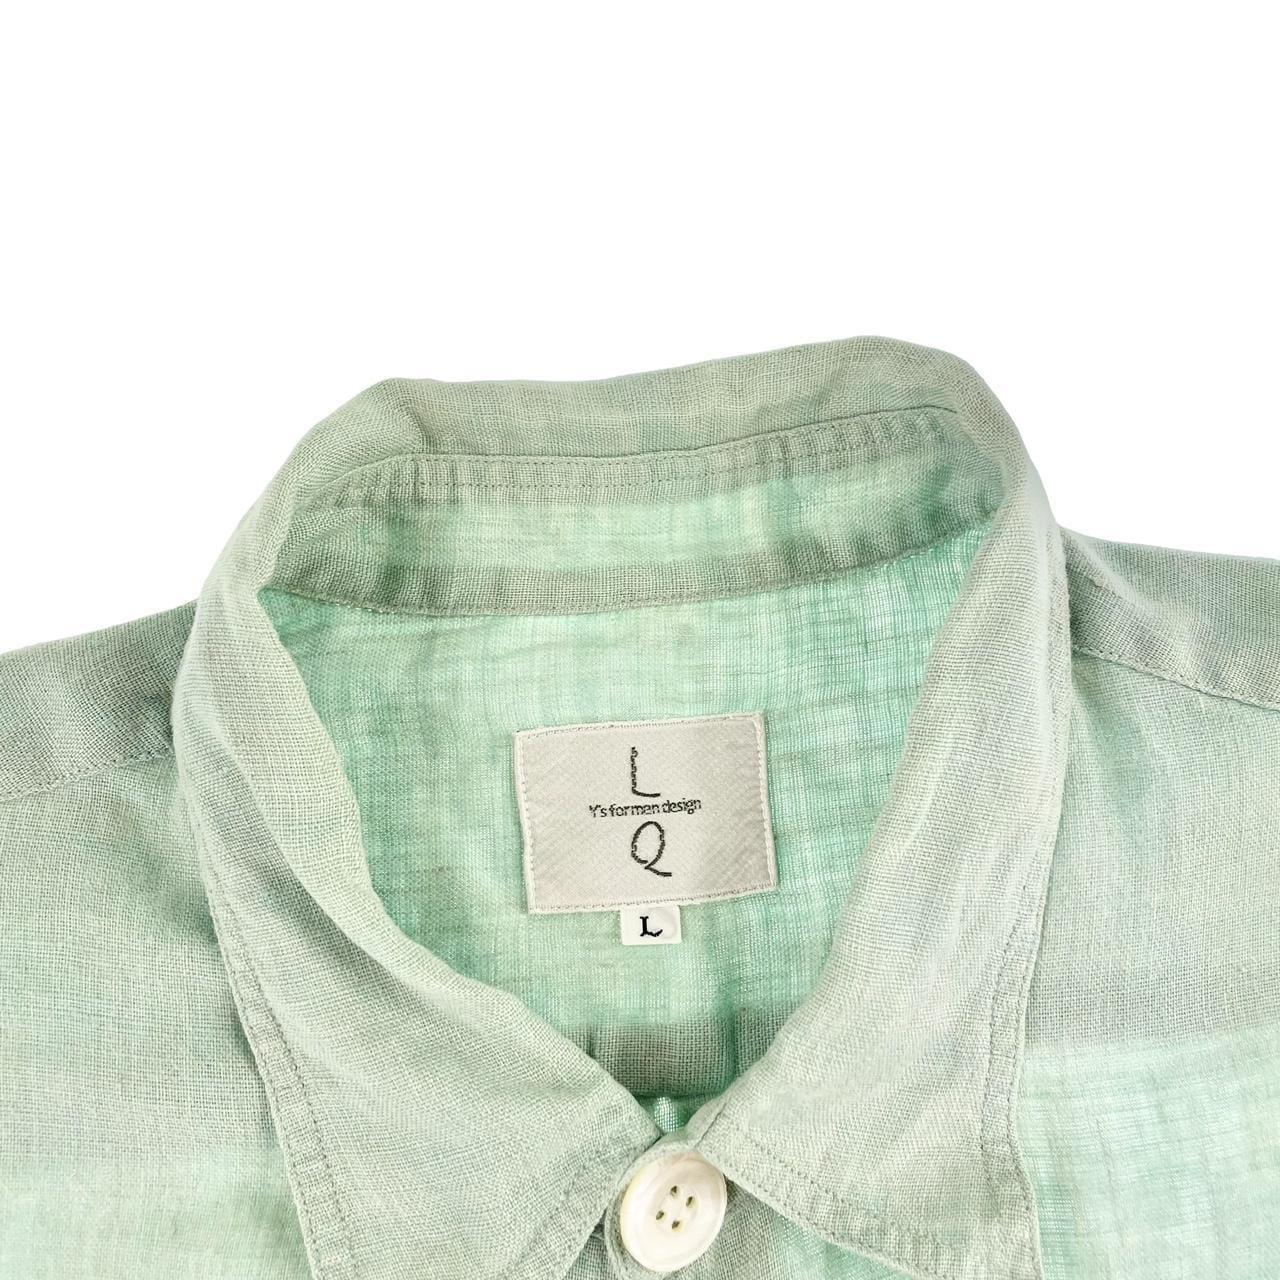 Vintage Yohji Yamamoto button shirt size L - Known Source